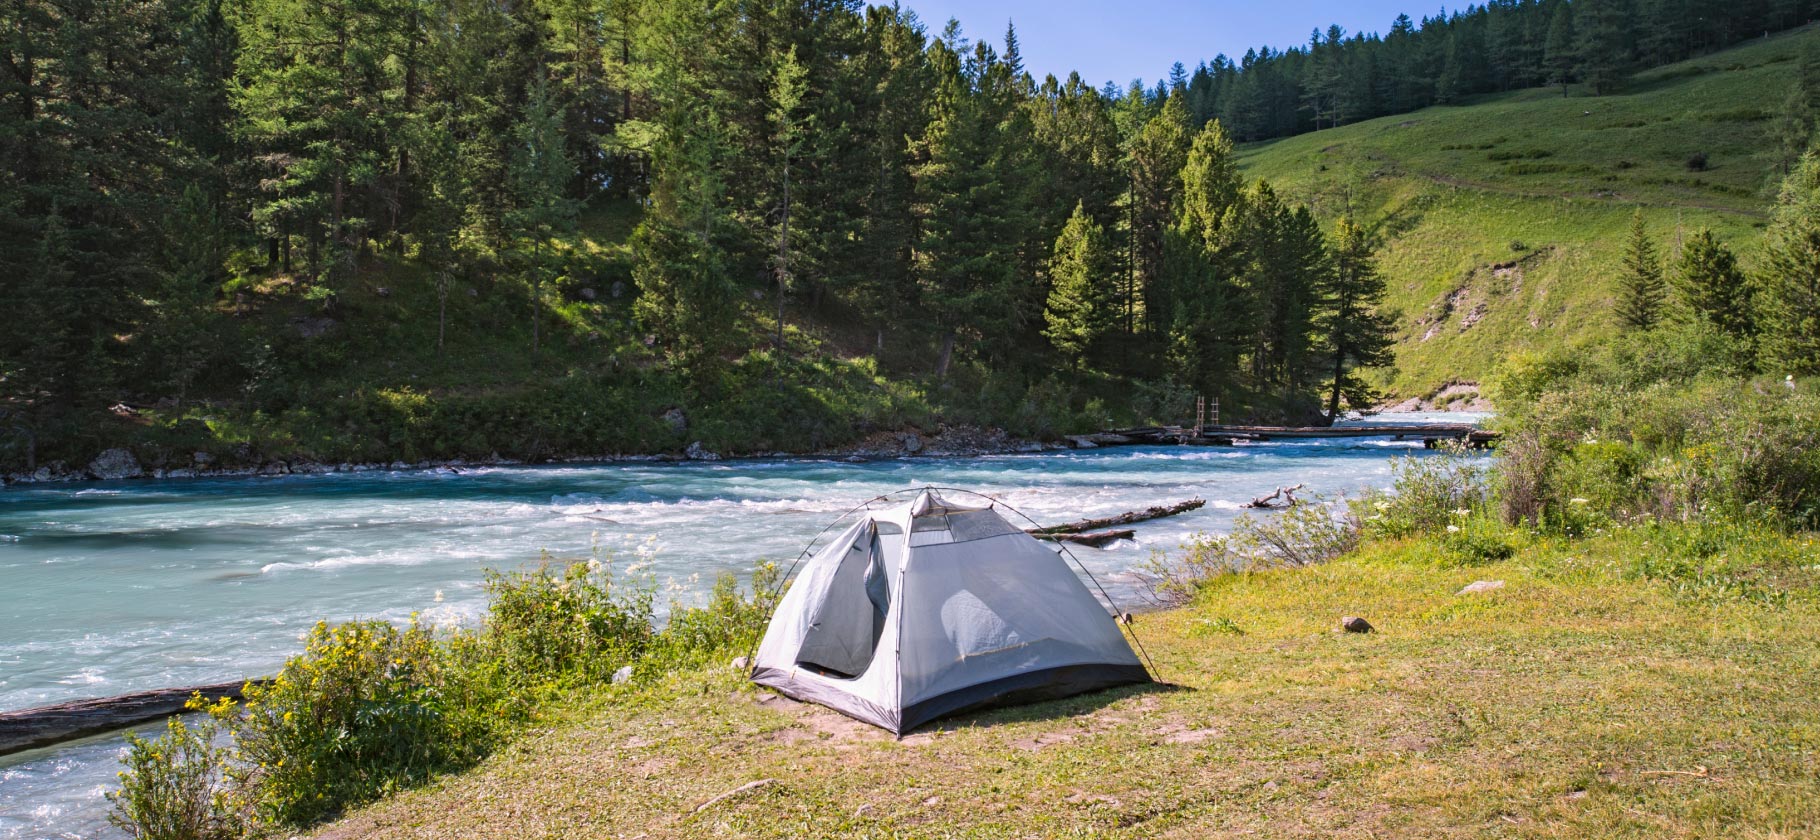 Где шикарно отдохнуть в России с палаткой: 10 проверенных мест